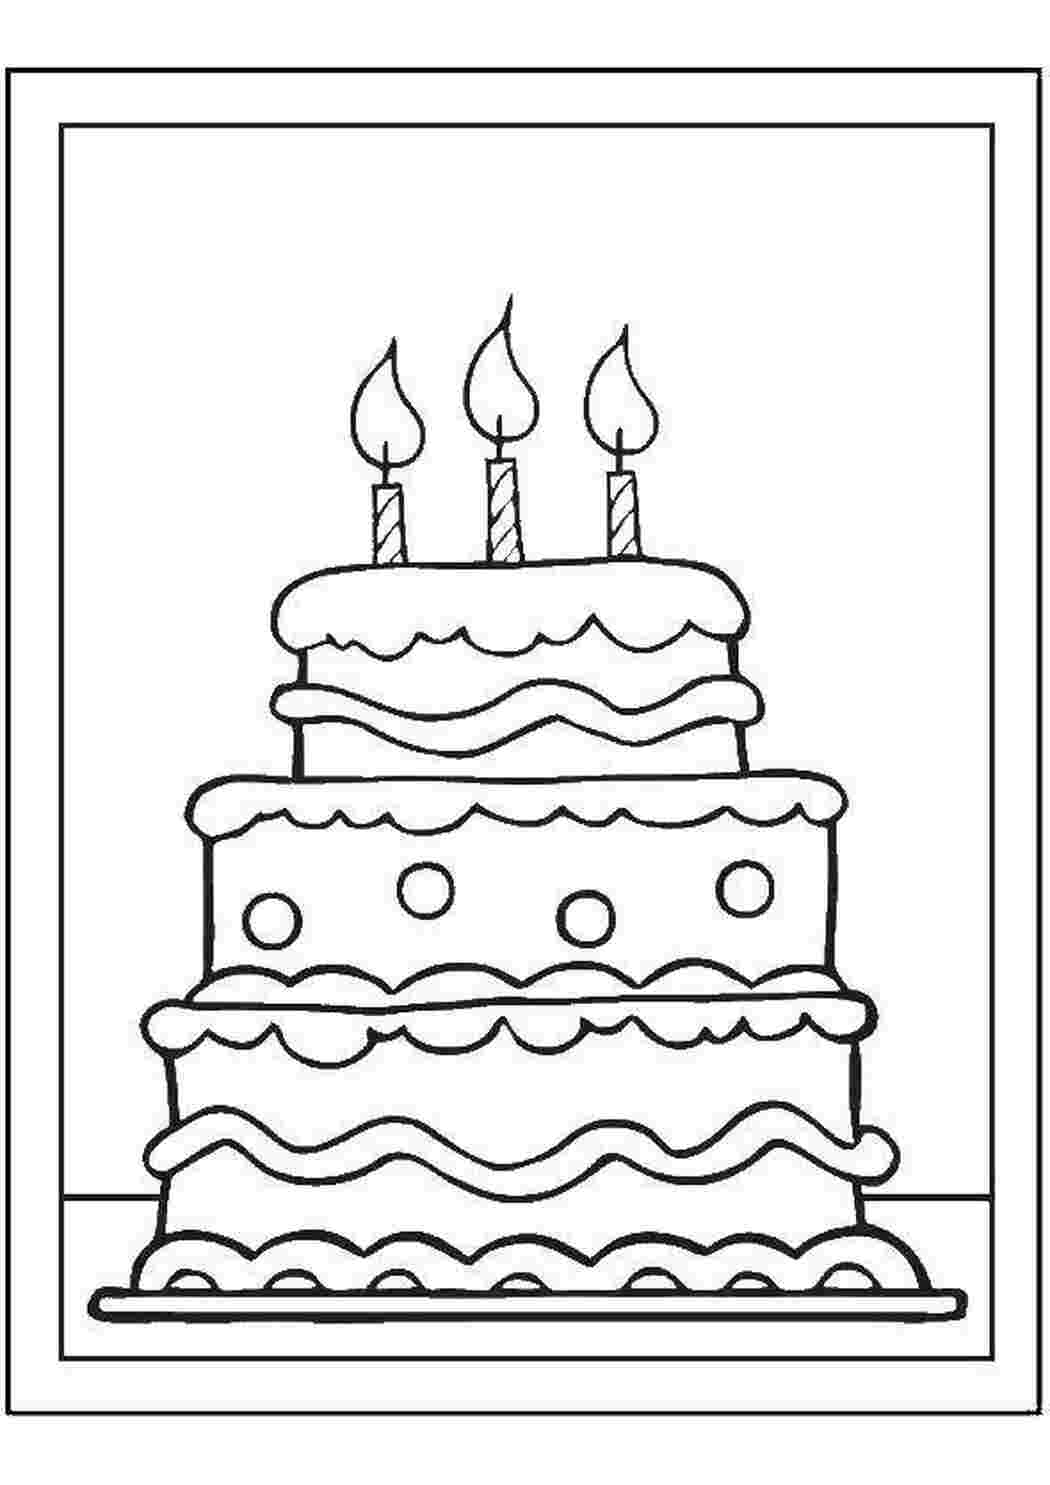 Распечатать картинку на торт. Раскраска тортик на день рождения. Контур торта для раскрашивания. Cake раскраска для детей. Торт черно белый рисунок.